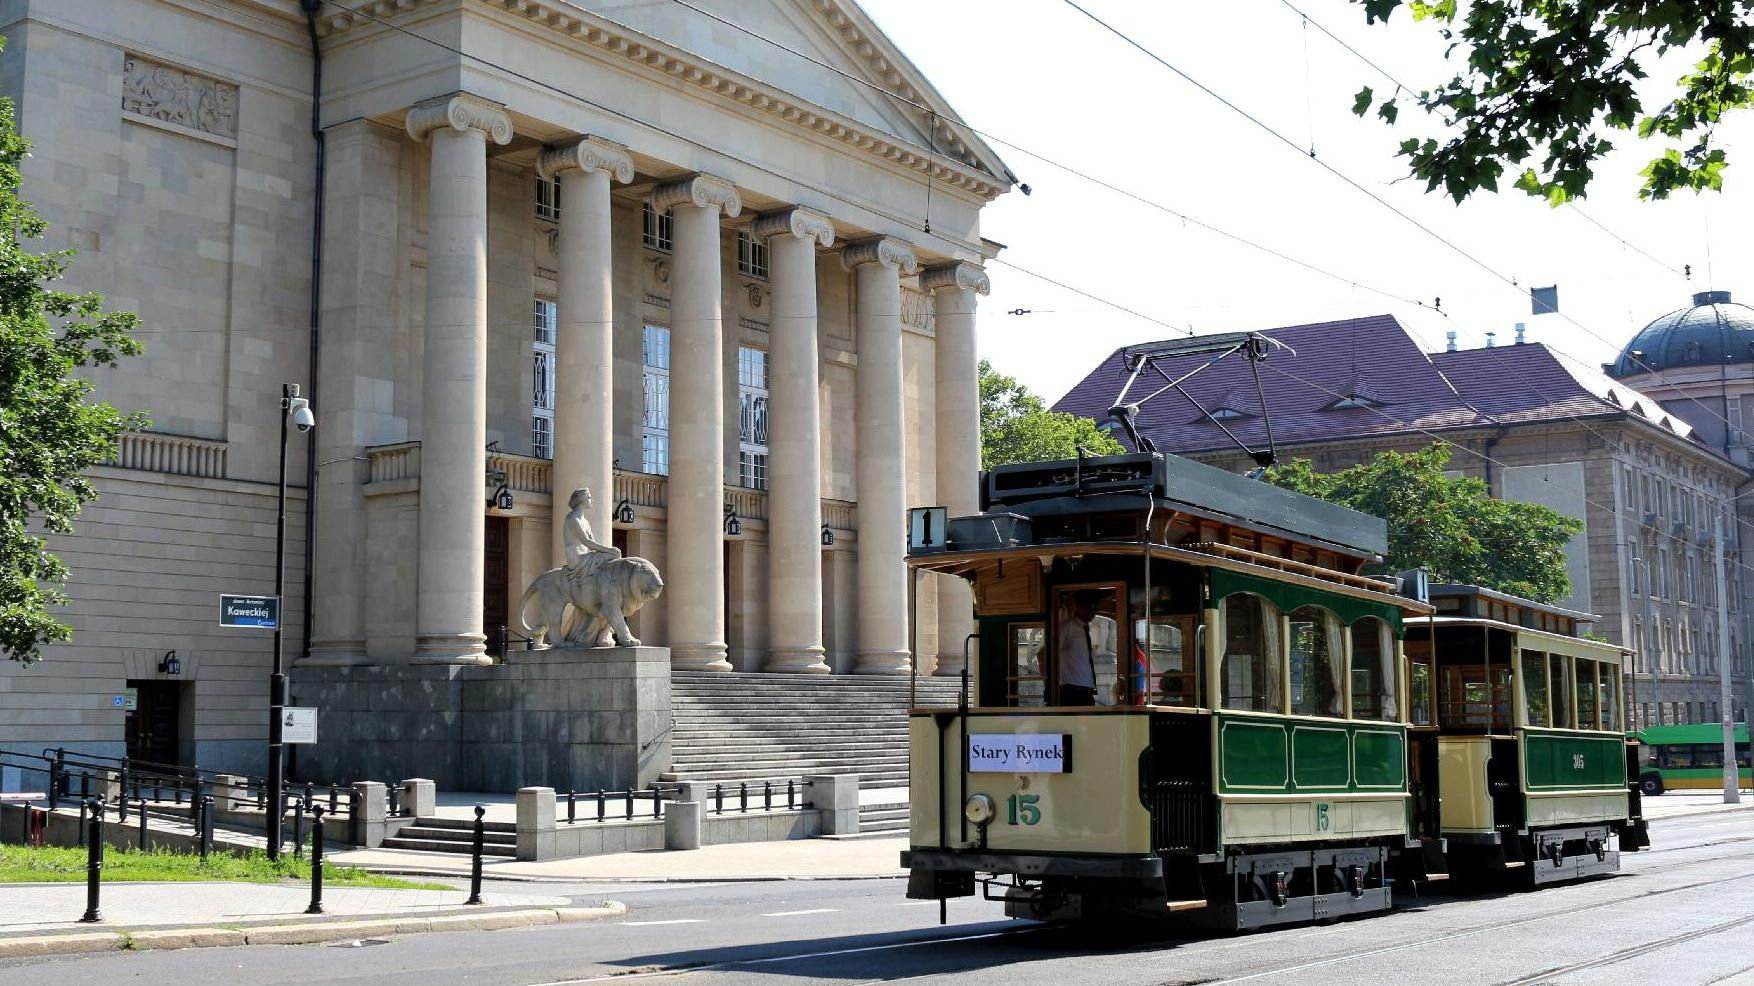 Na pierwszym planie widac historyczny tramwaj jadacy ul. Fredry w tle znajduje sie budynek opery, fot. mpk. - grafika artykułu